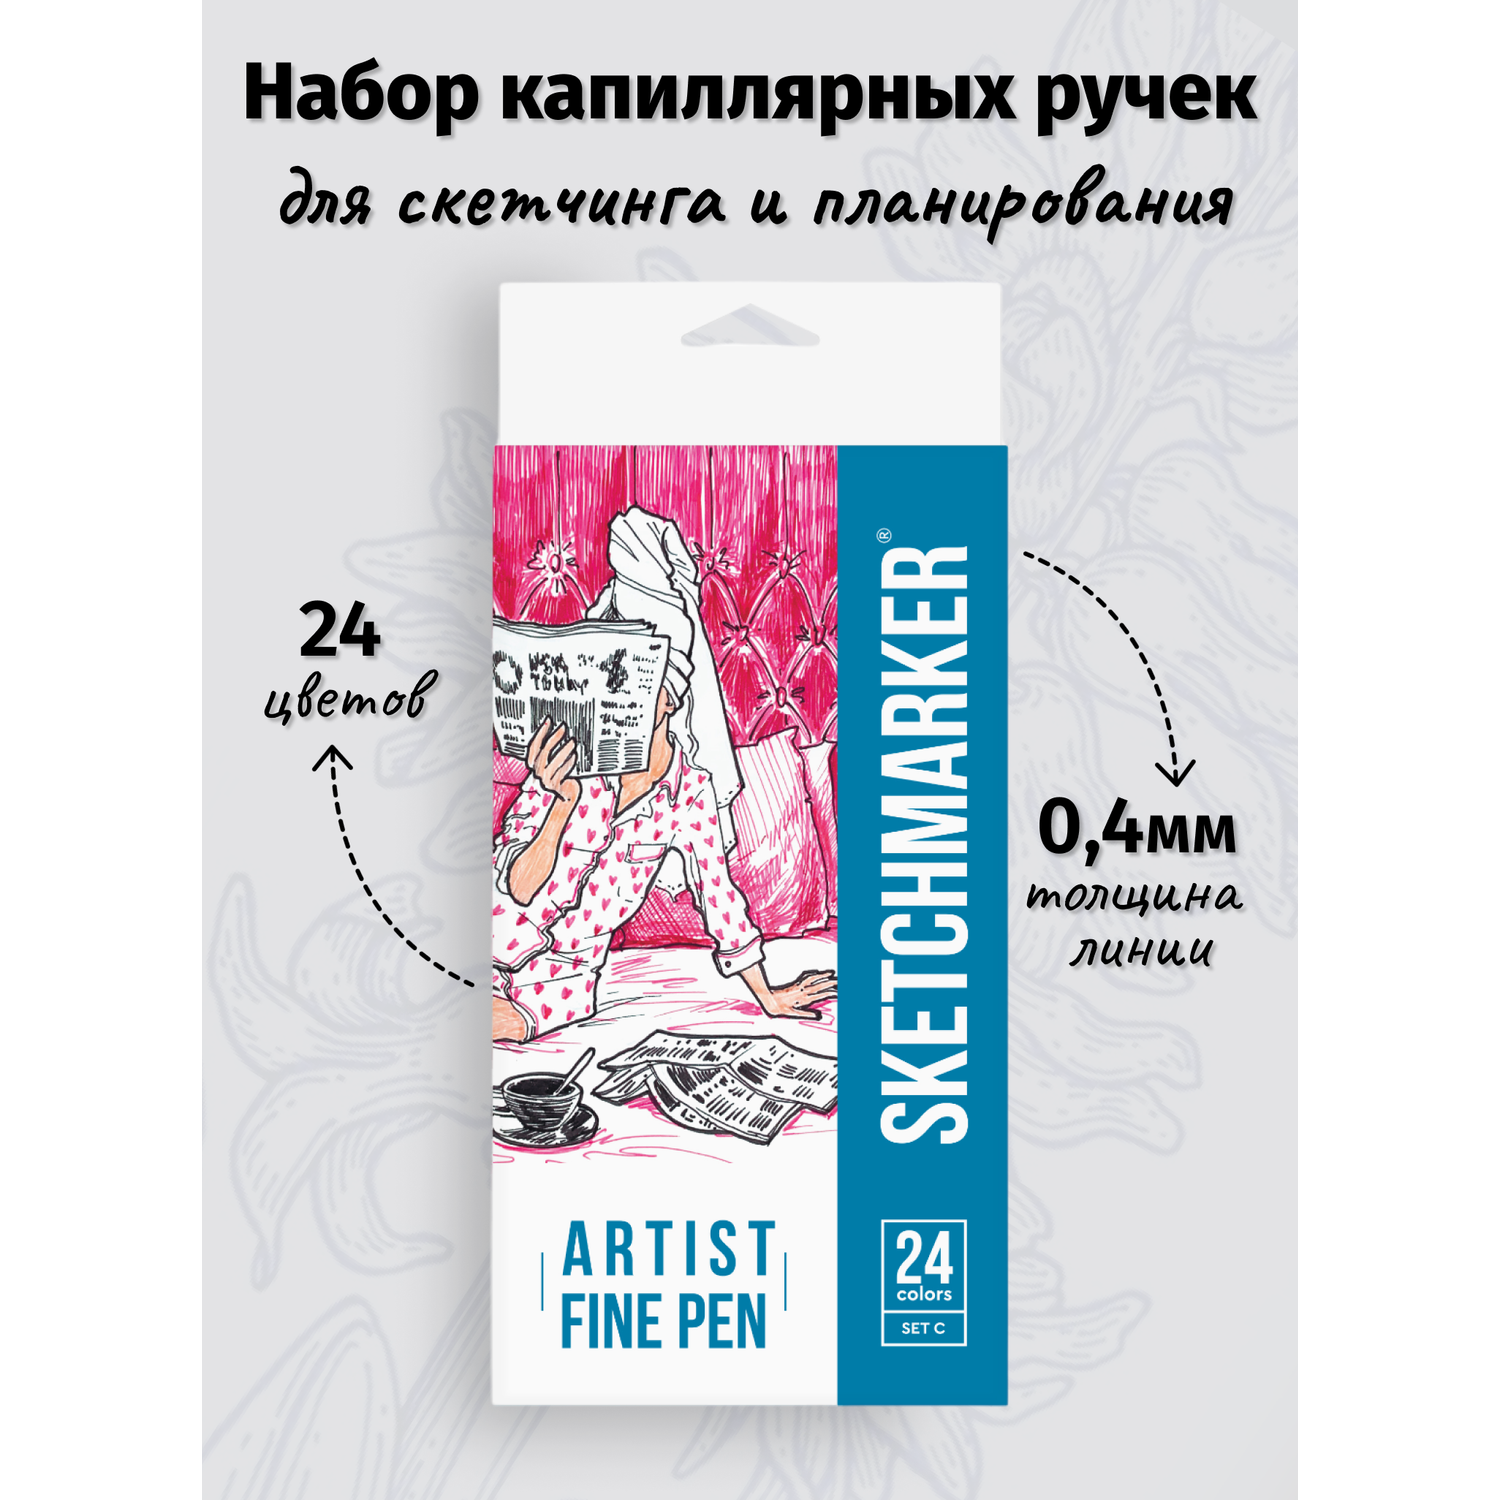 Набор капиллярных ручек SKETCHMARKER Artist fine pen Basic 3 24 цвета - фото 1